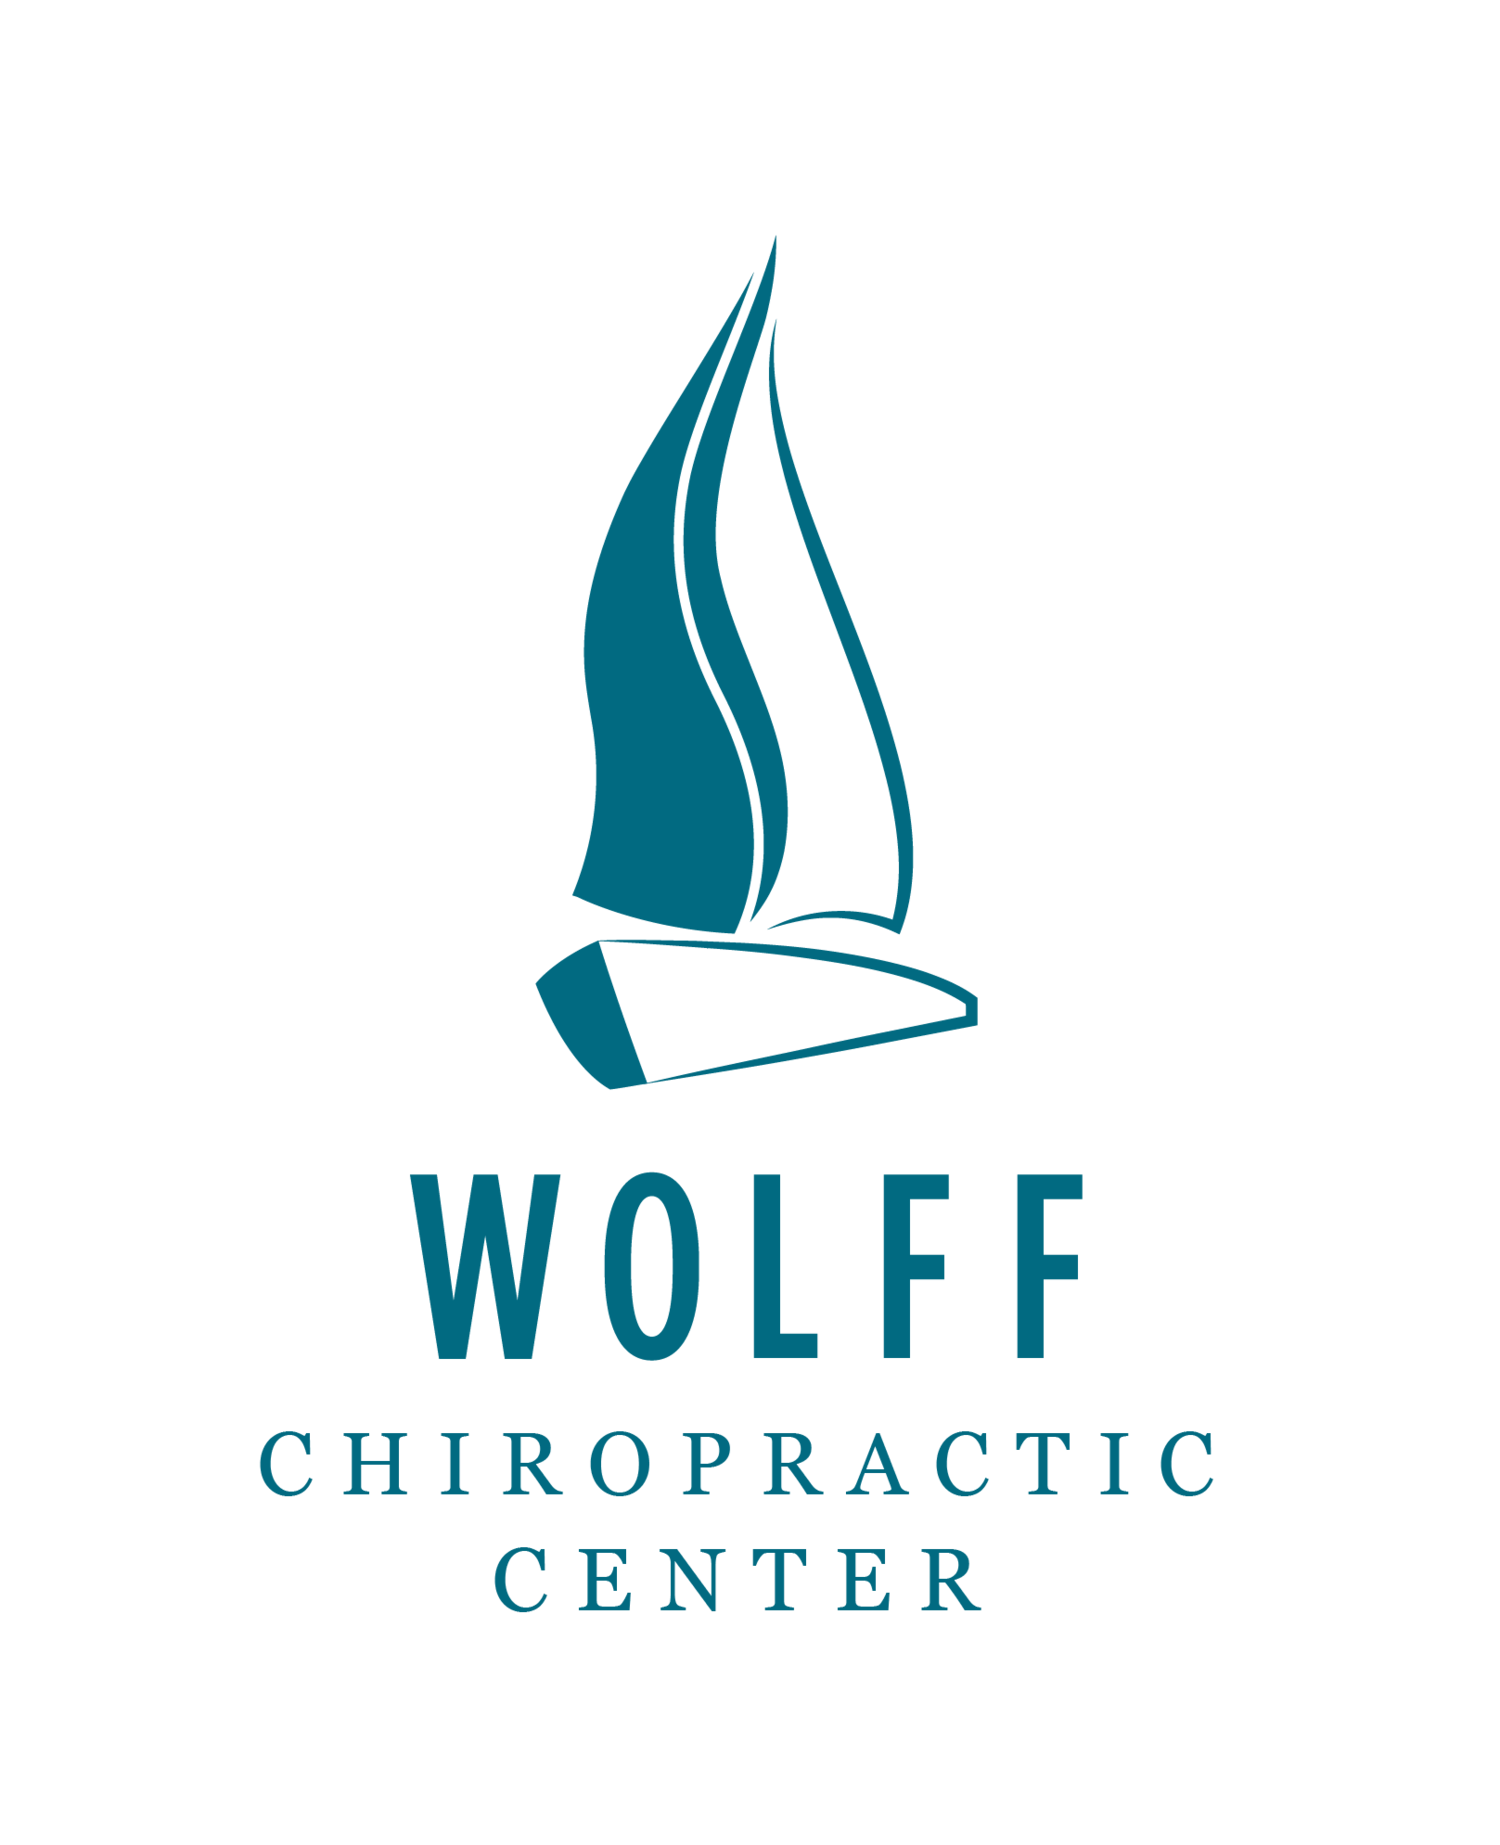 Wolff Chiropractic Center